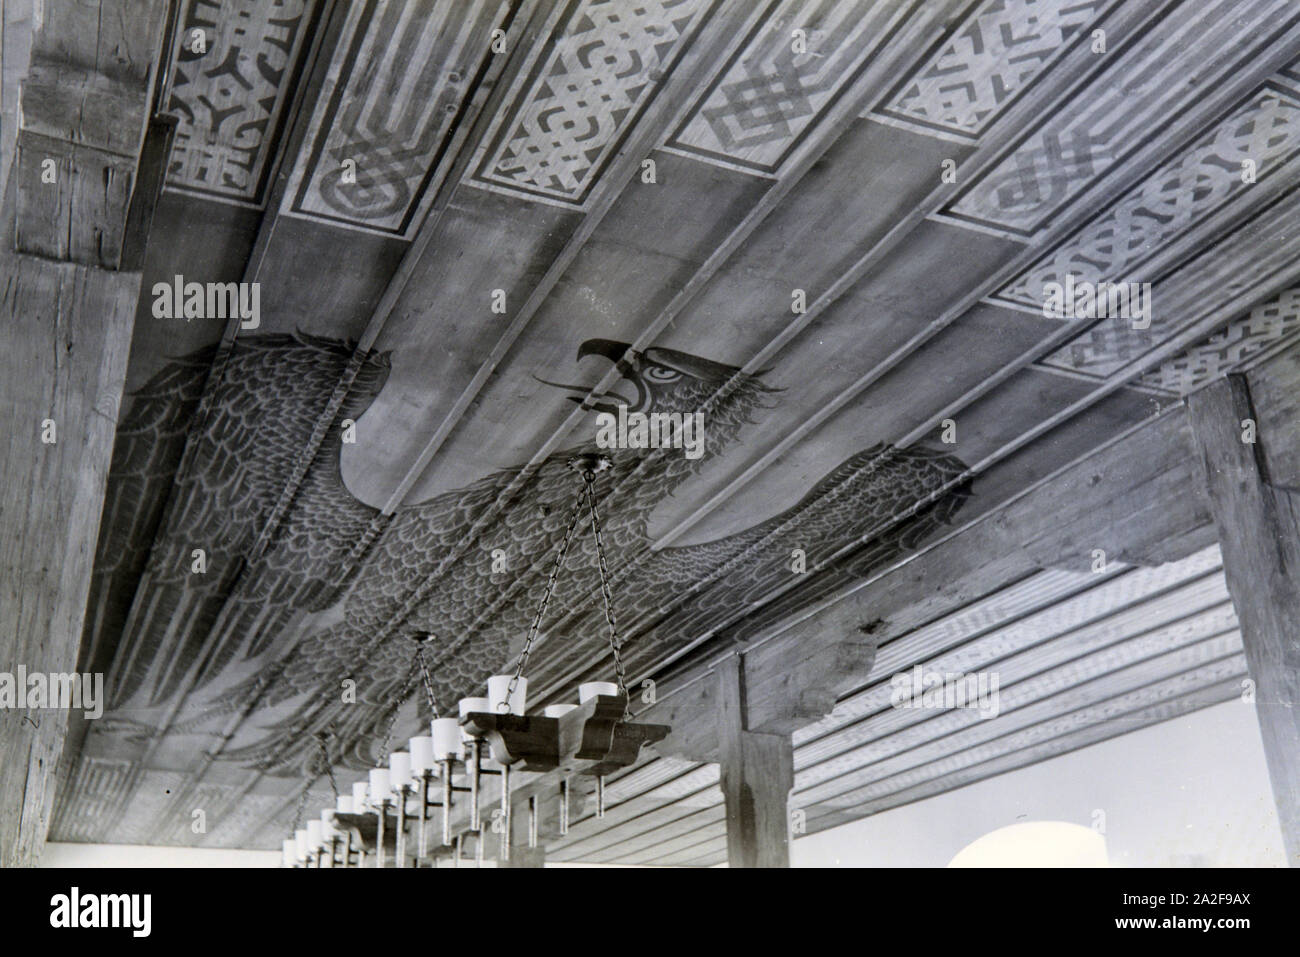 Decke mit Holzverkleidung, Kronleuchter / Lampe, Ornamenten und Adler /  Reichsadler Motiv bemalt, Deutschland 1930er Jahre. Wooden ceiling